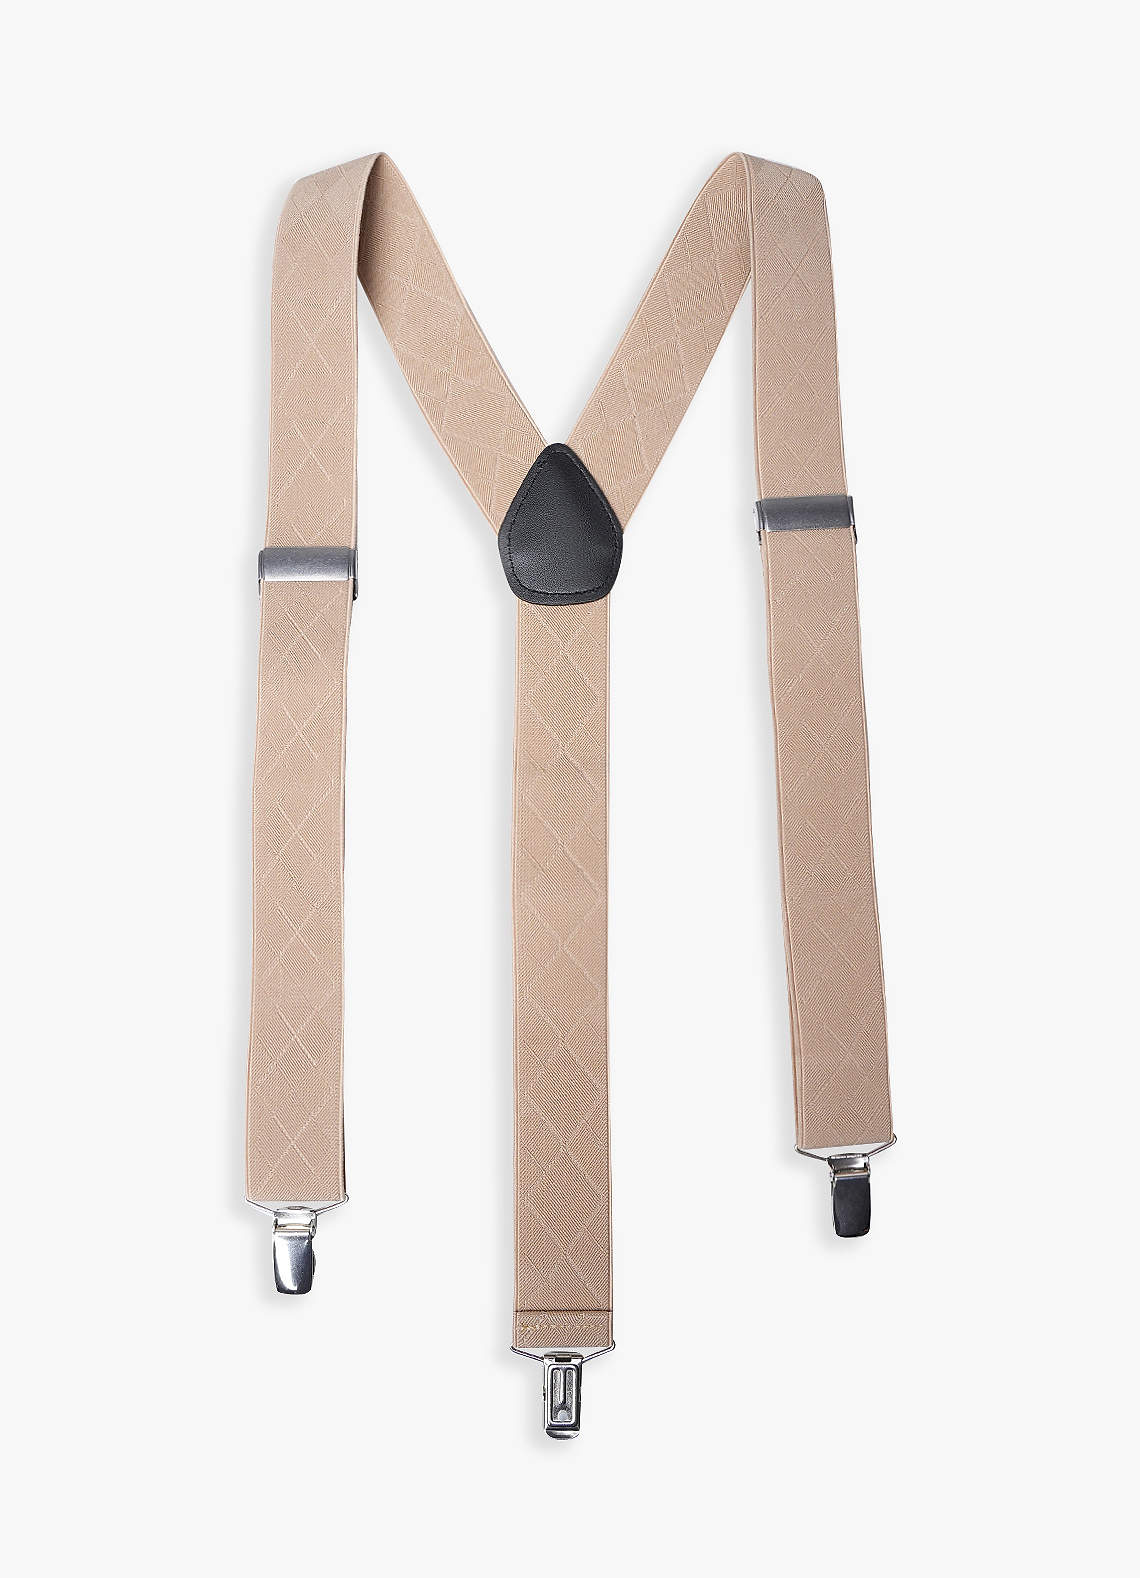 Plaid Three-Clip Suspenders